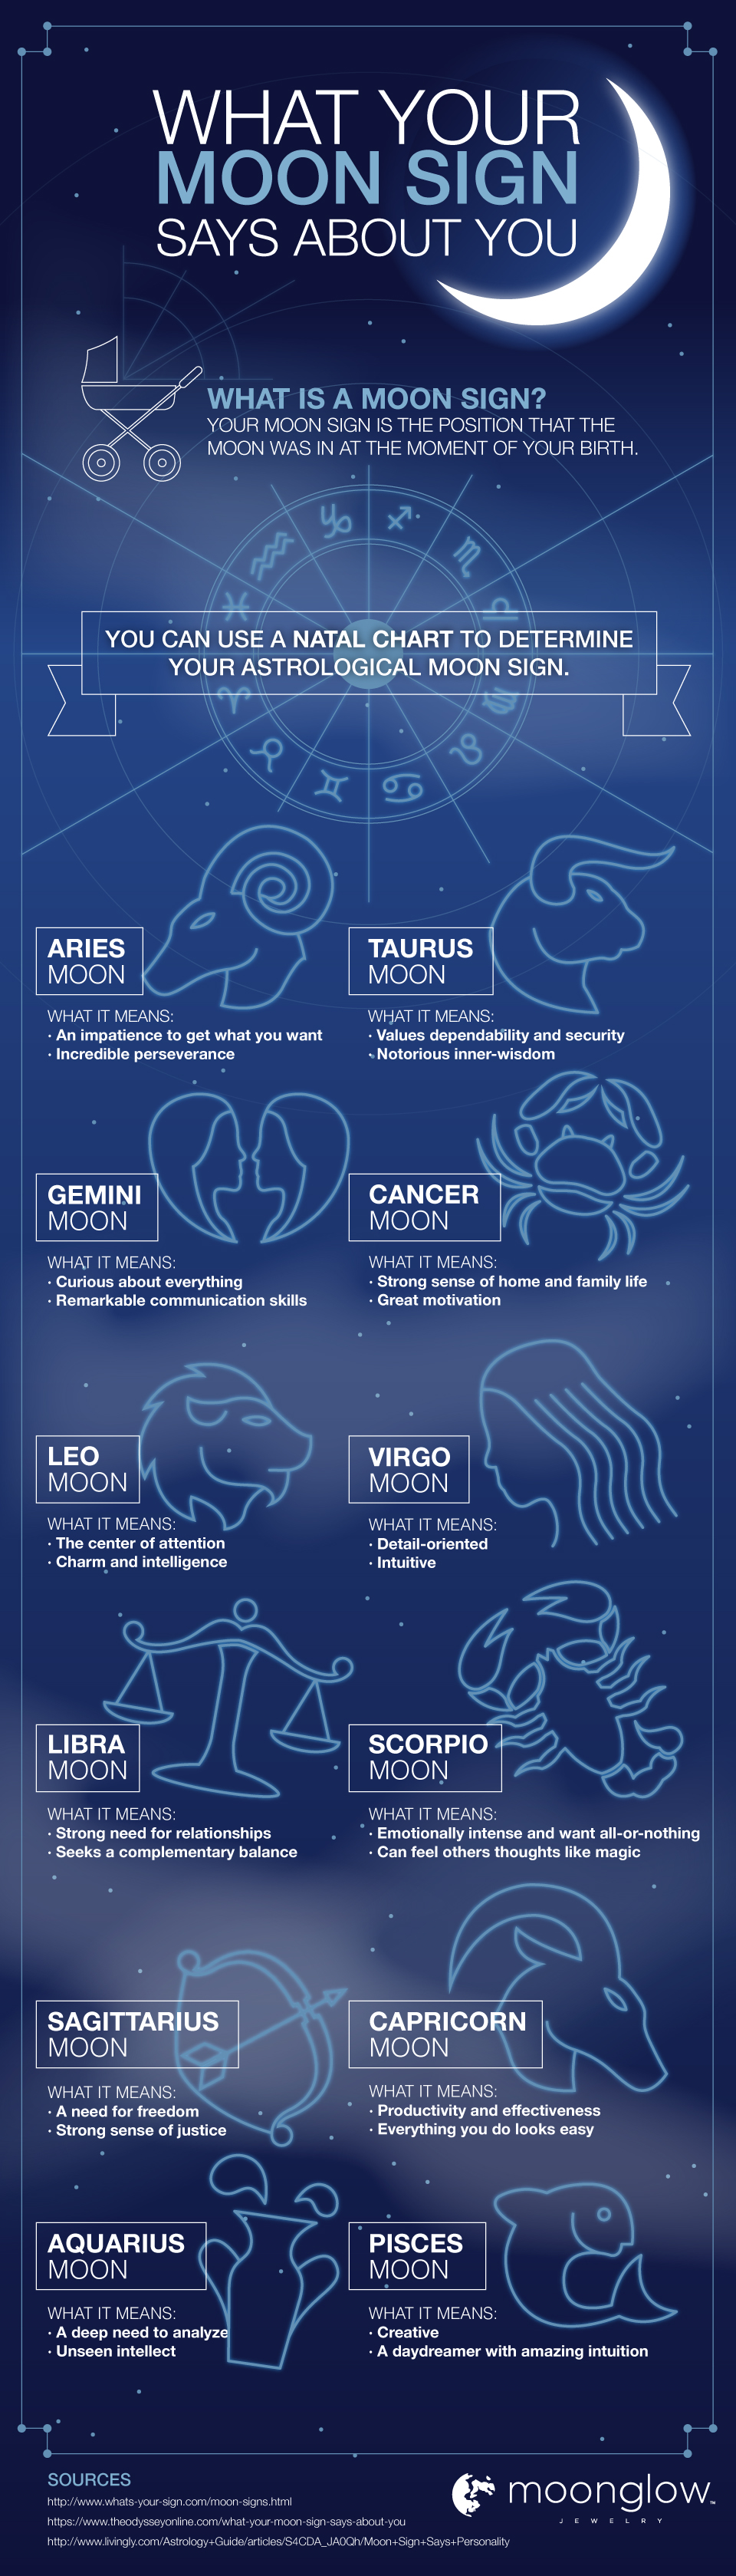 Comment connaissez-vous vos signes de soleil et de lune?